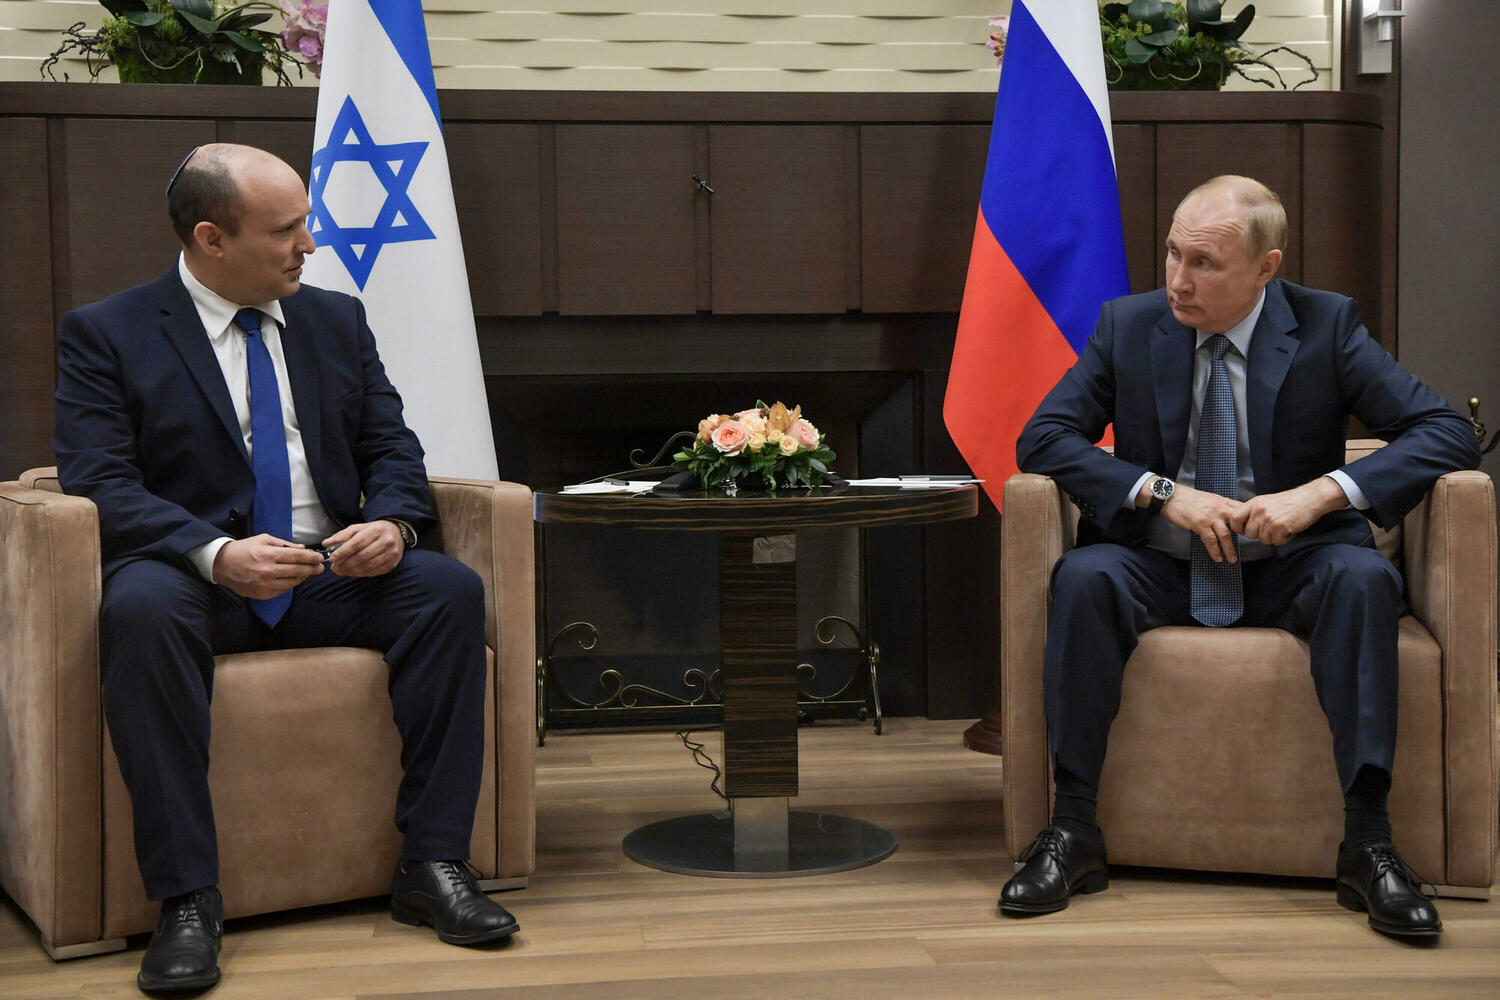 Скандал с Лавровым изменит позицию Израиля в европейской войне?